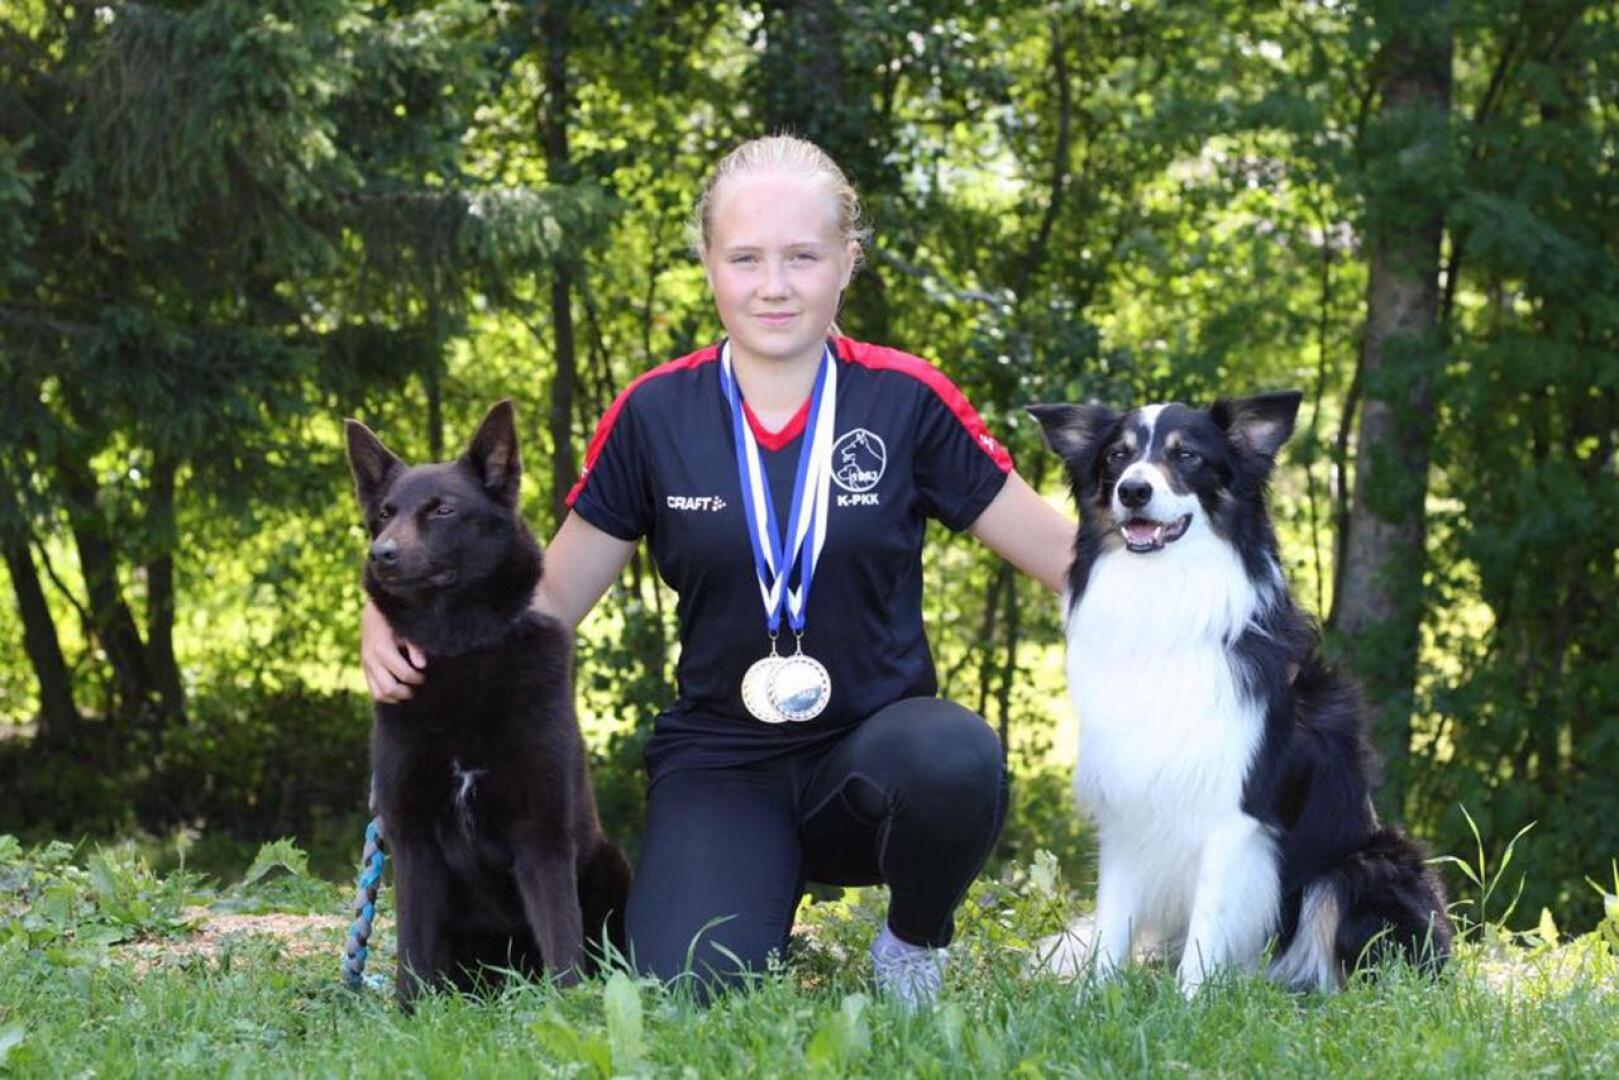 Keski-Pohjanmaan Koirakillan Laura Lehto sekä koirat Pikkis ja Midas saavuttivat kultaa ja hopeaa agilityn junioreiden SM-kilpailuista.